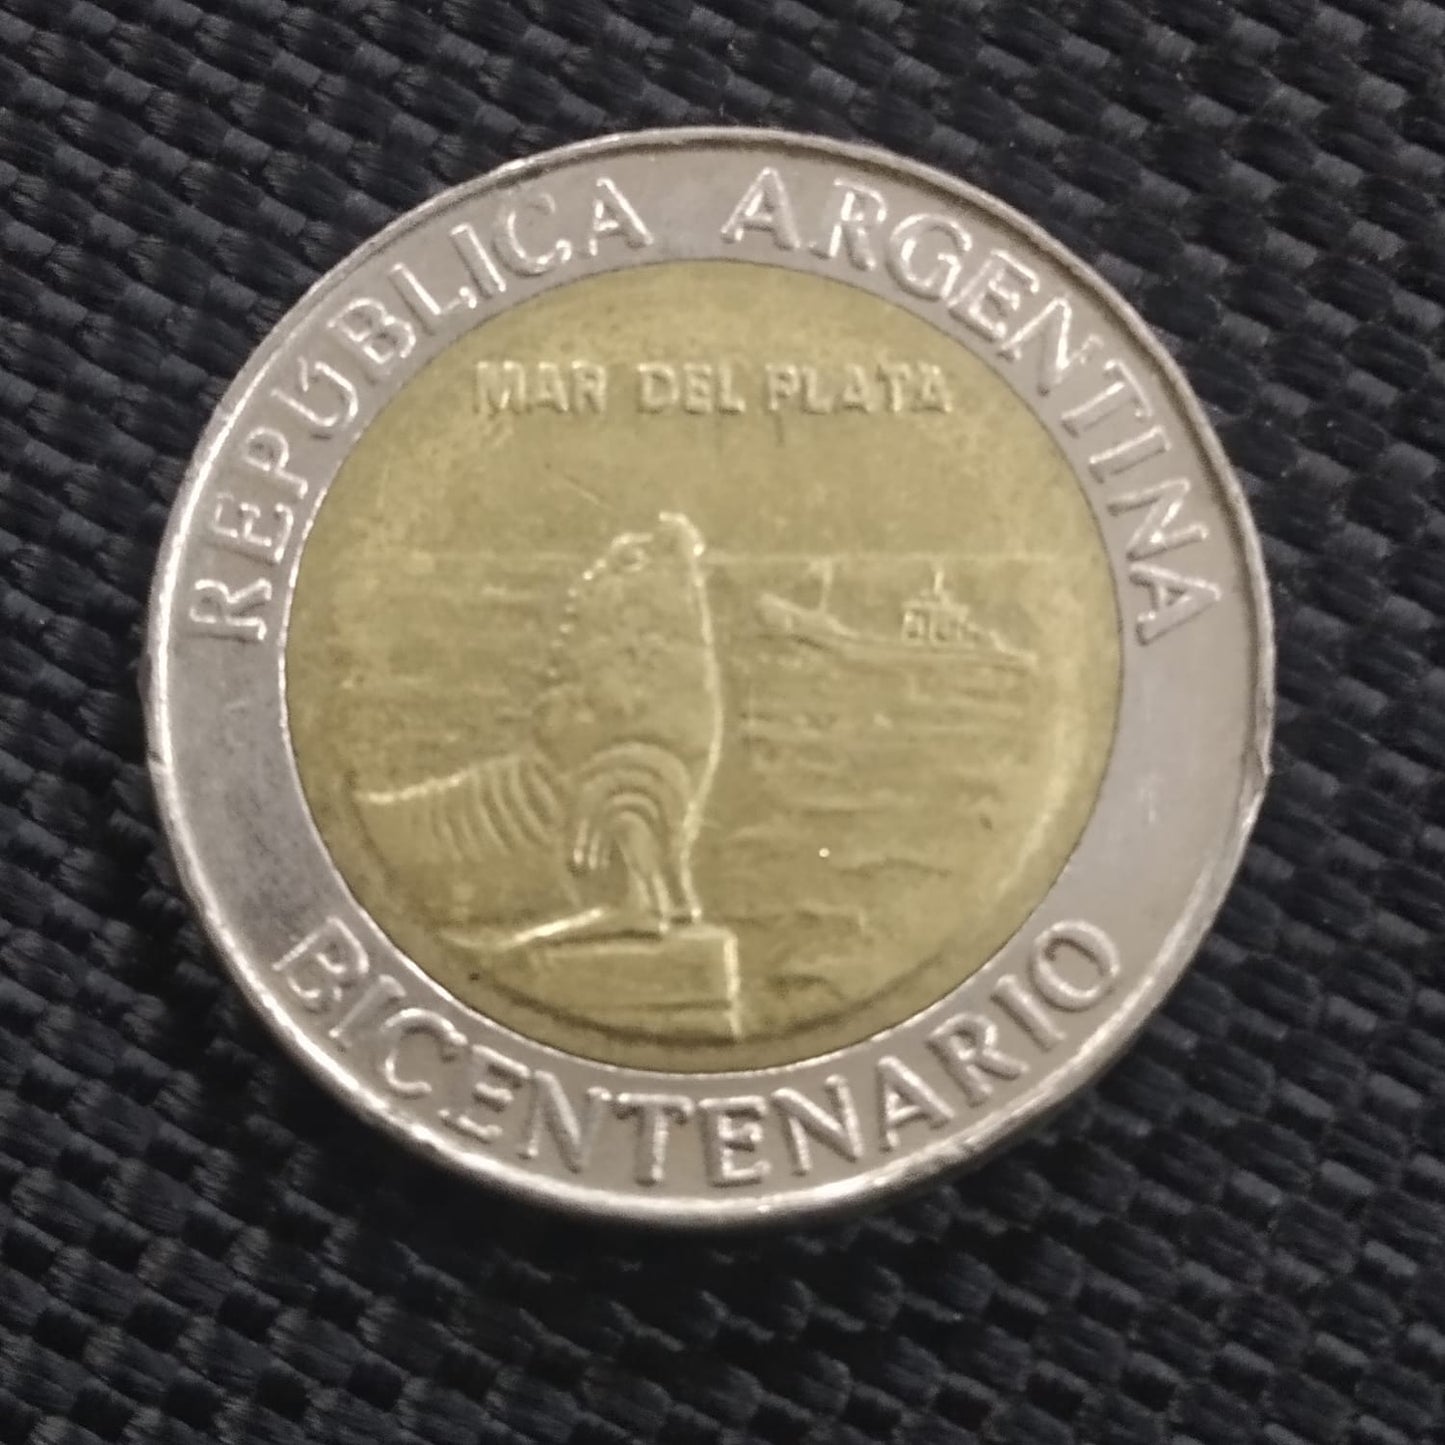 1 Peso - Argentina (Mar del Plata) - Circulating Commemorative